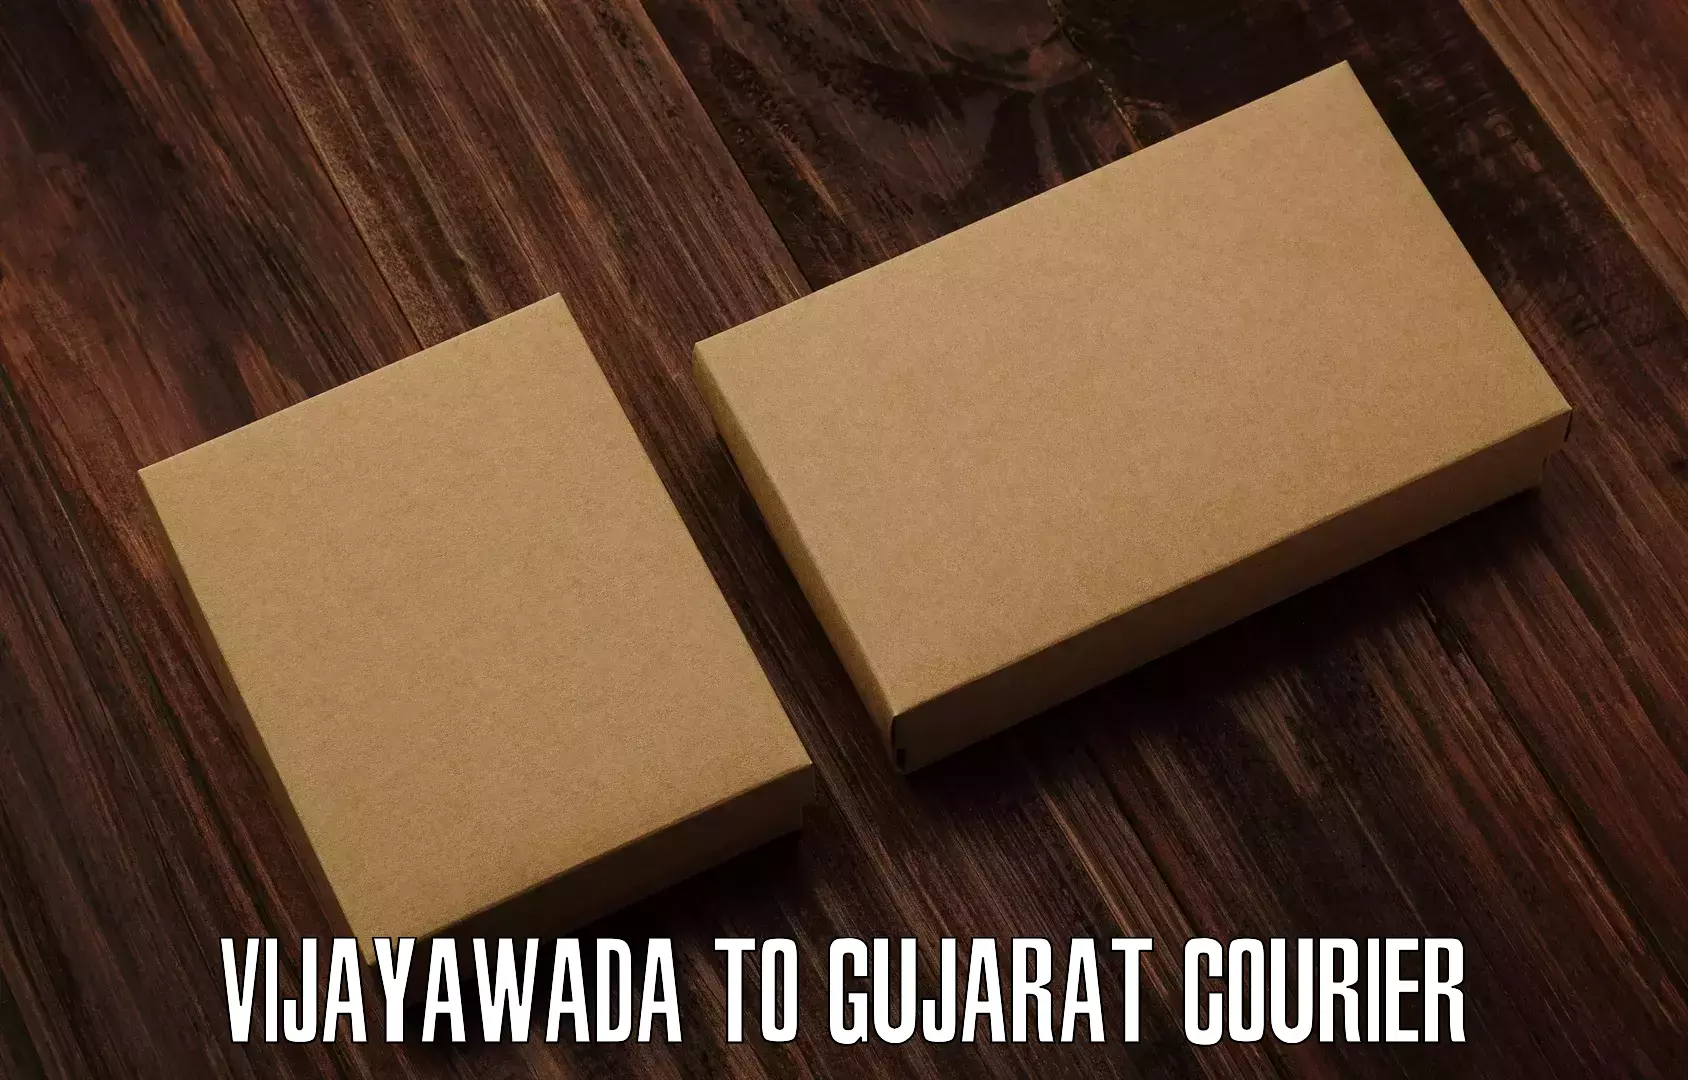 Urban courier service Vijayawada to Narmada Gujarat